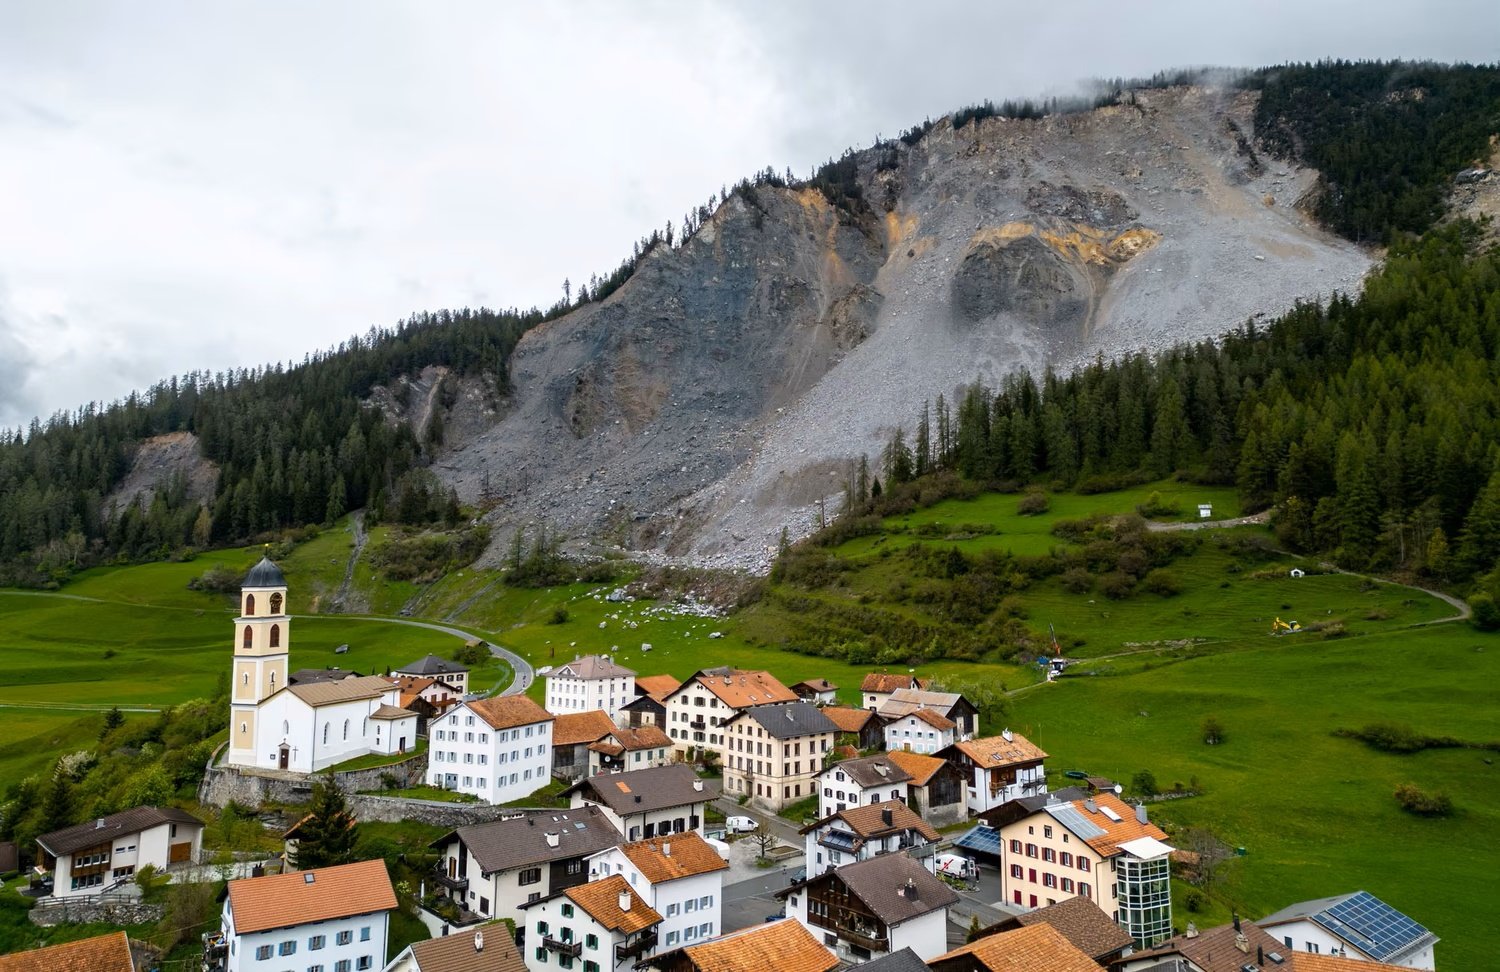 Chiêm ngưỡng “nóc nhà Châu Âu” đỉnh Jungfrau - niềm tự hào của người Thuỵ Sĩ